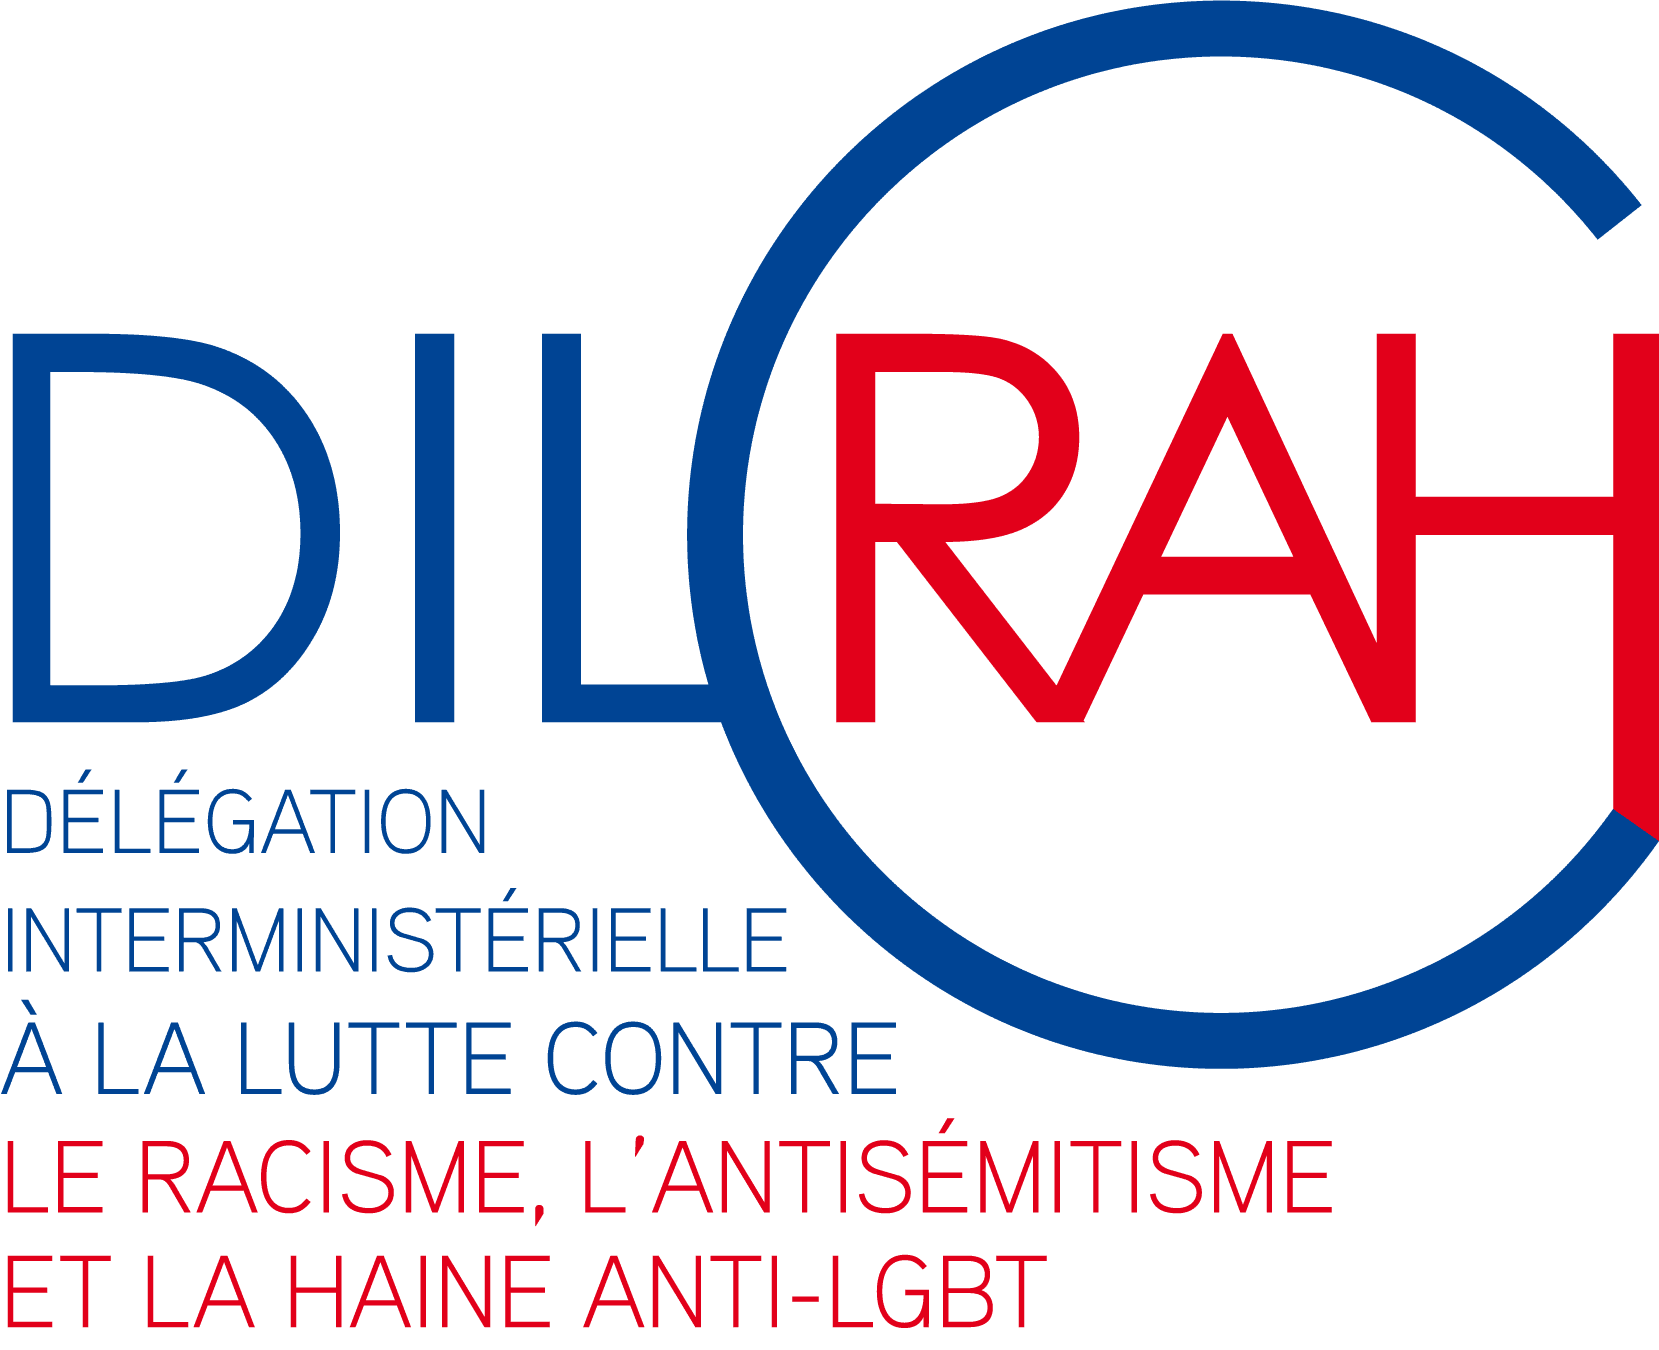 logo DILCRAH